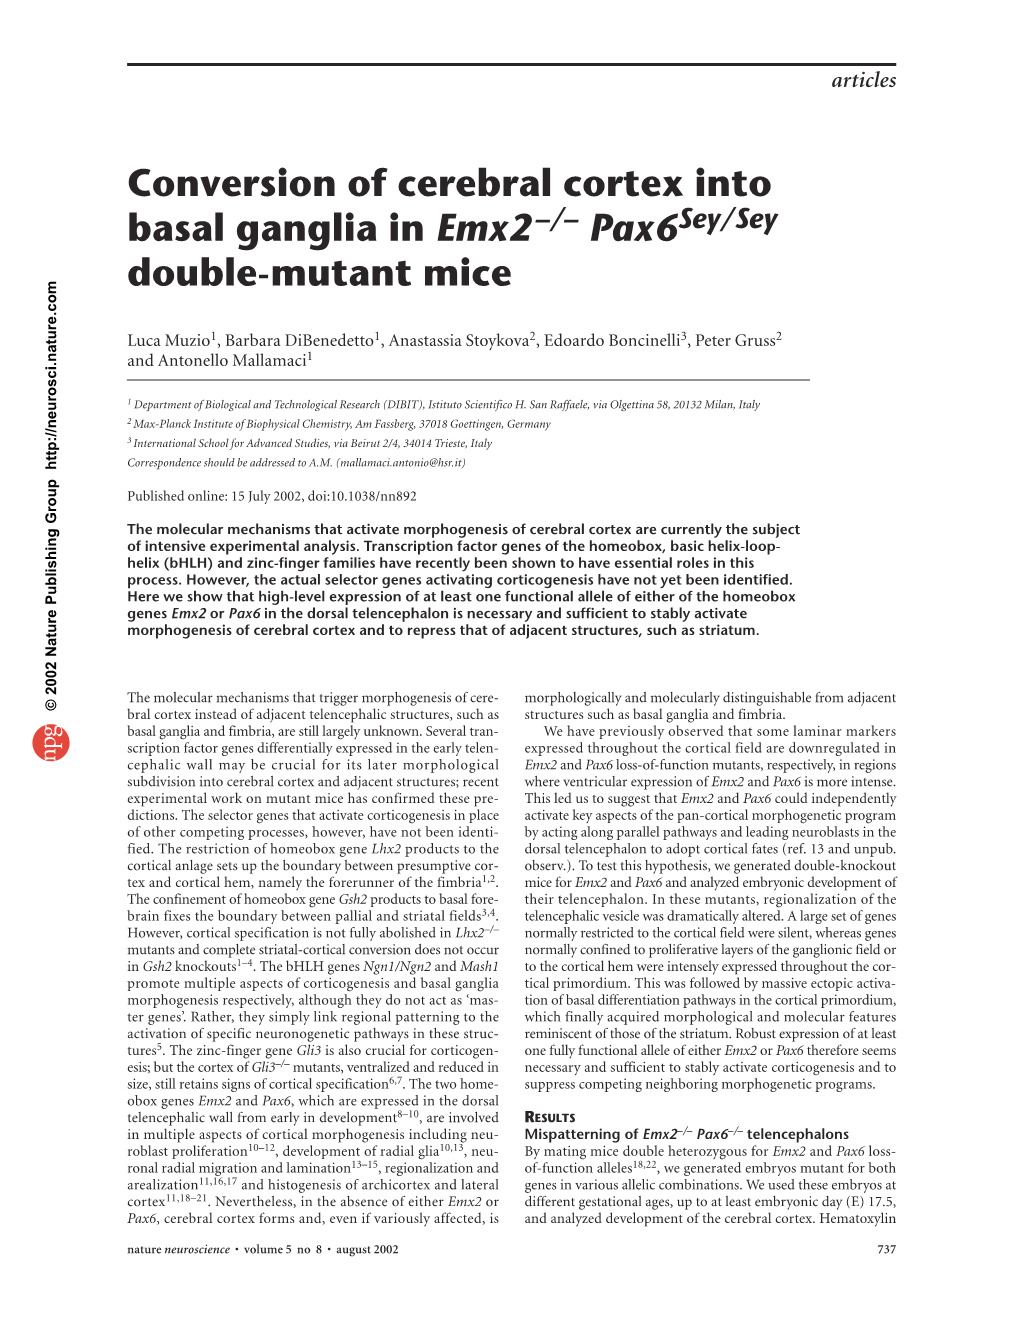 Conversion of Cerebral Cortex Into Basal Ganglia in Emx2 Pax6 Double